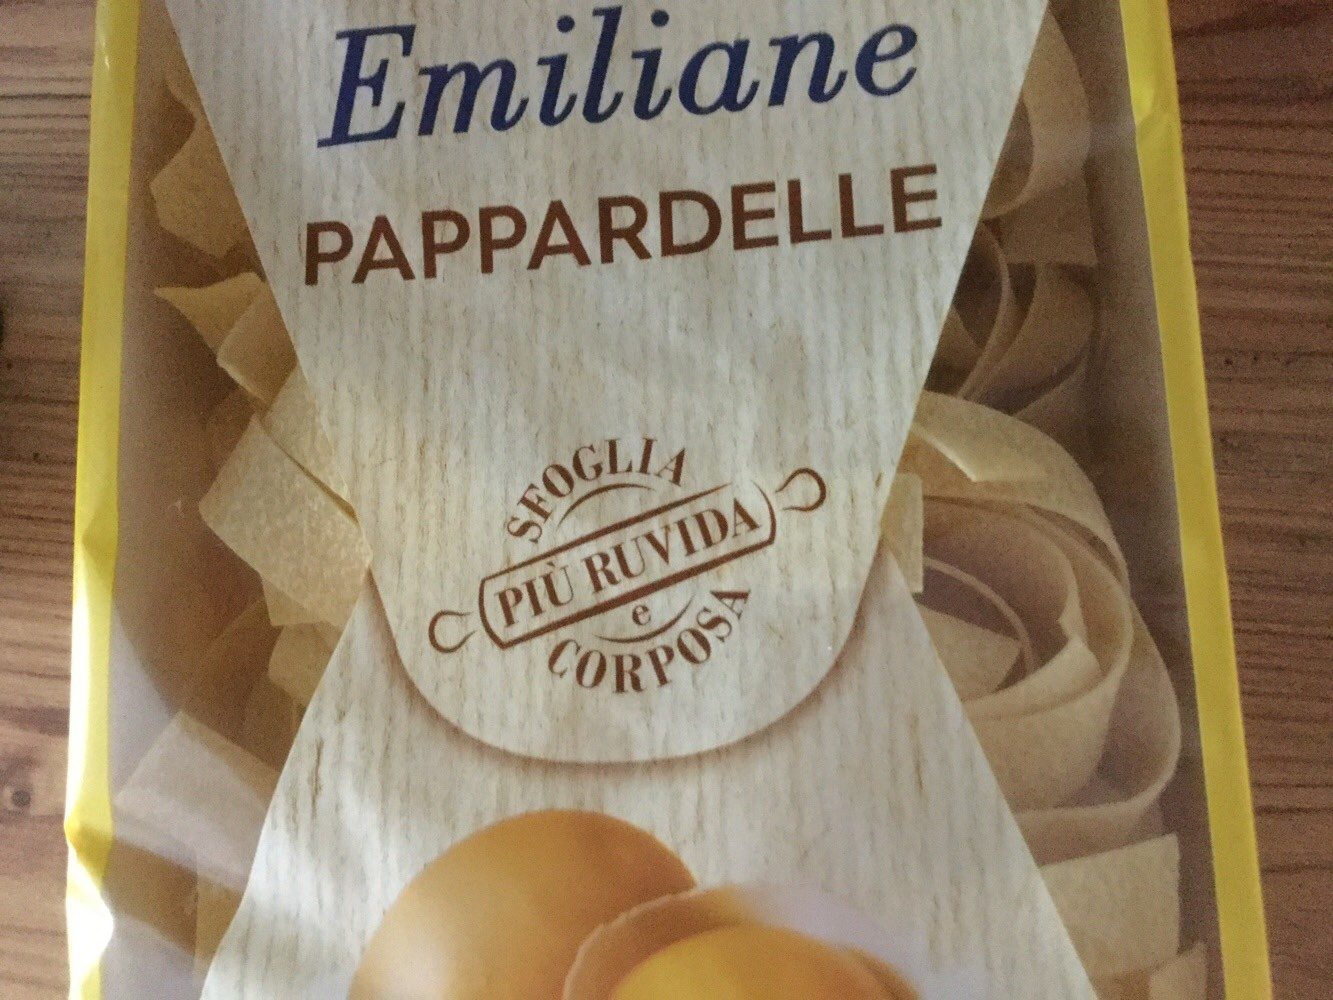 Barilla collezione Pappardelle All'uovo 250g - Product - fr